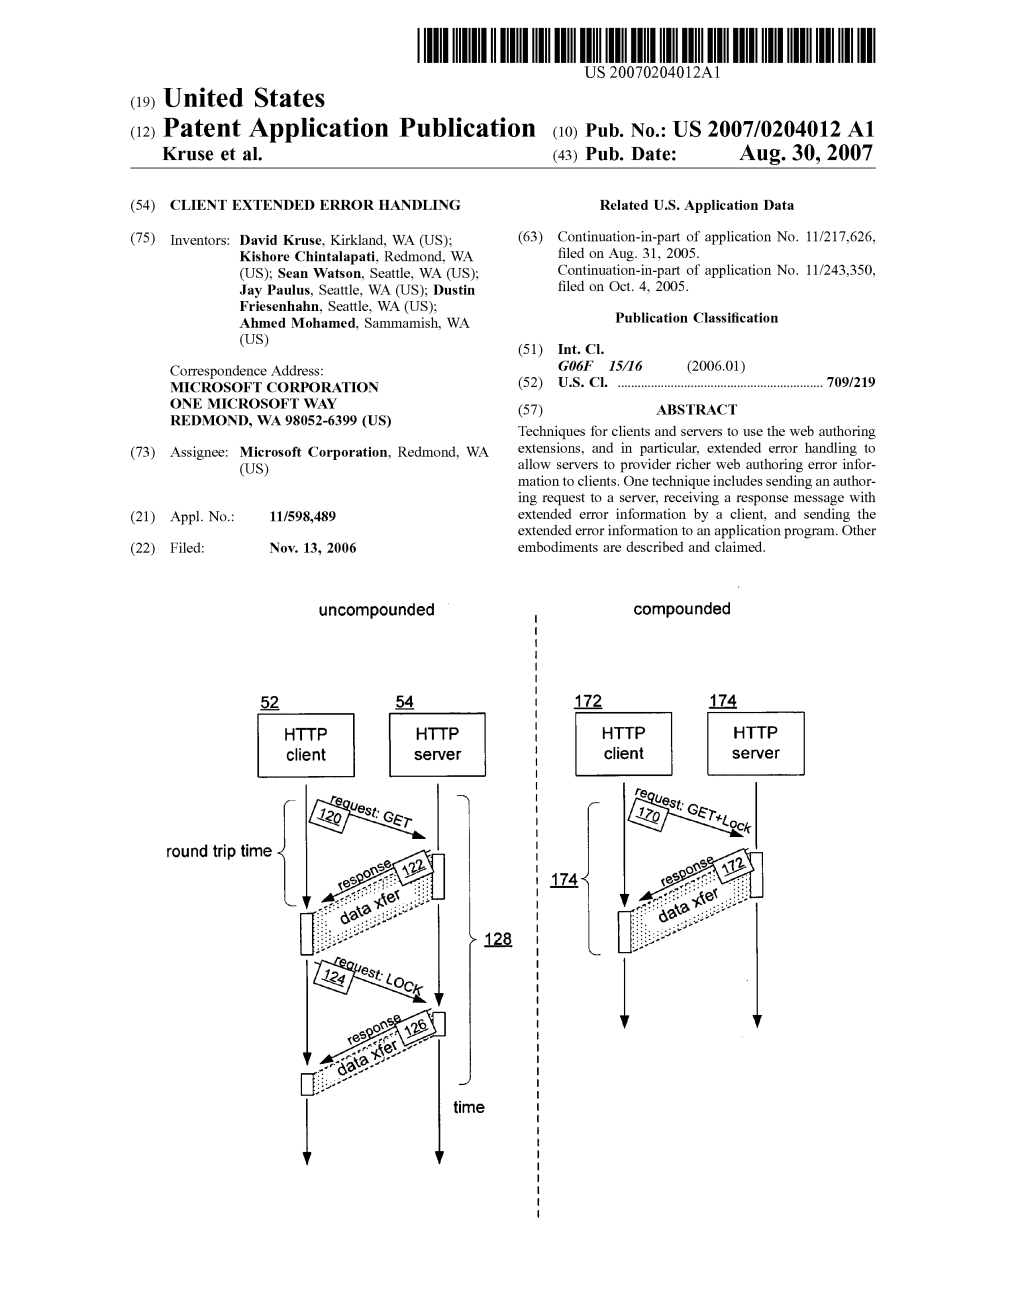 (12) Patent Application Publication (10) Pub. No.: US 2007/0204012 A1 Kruse Et Al